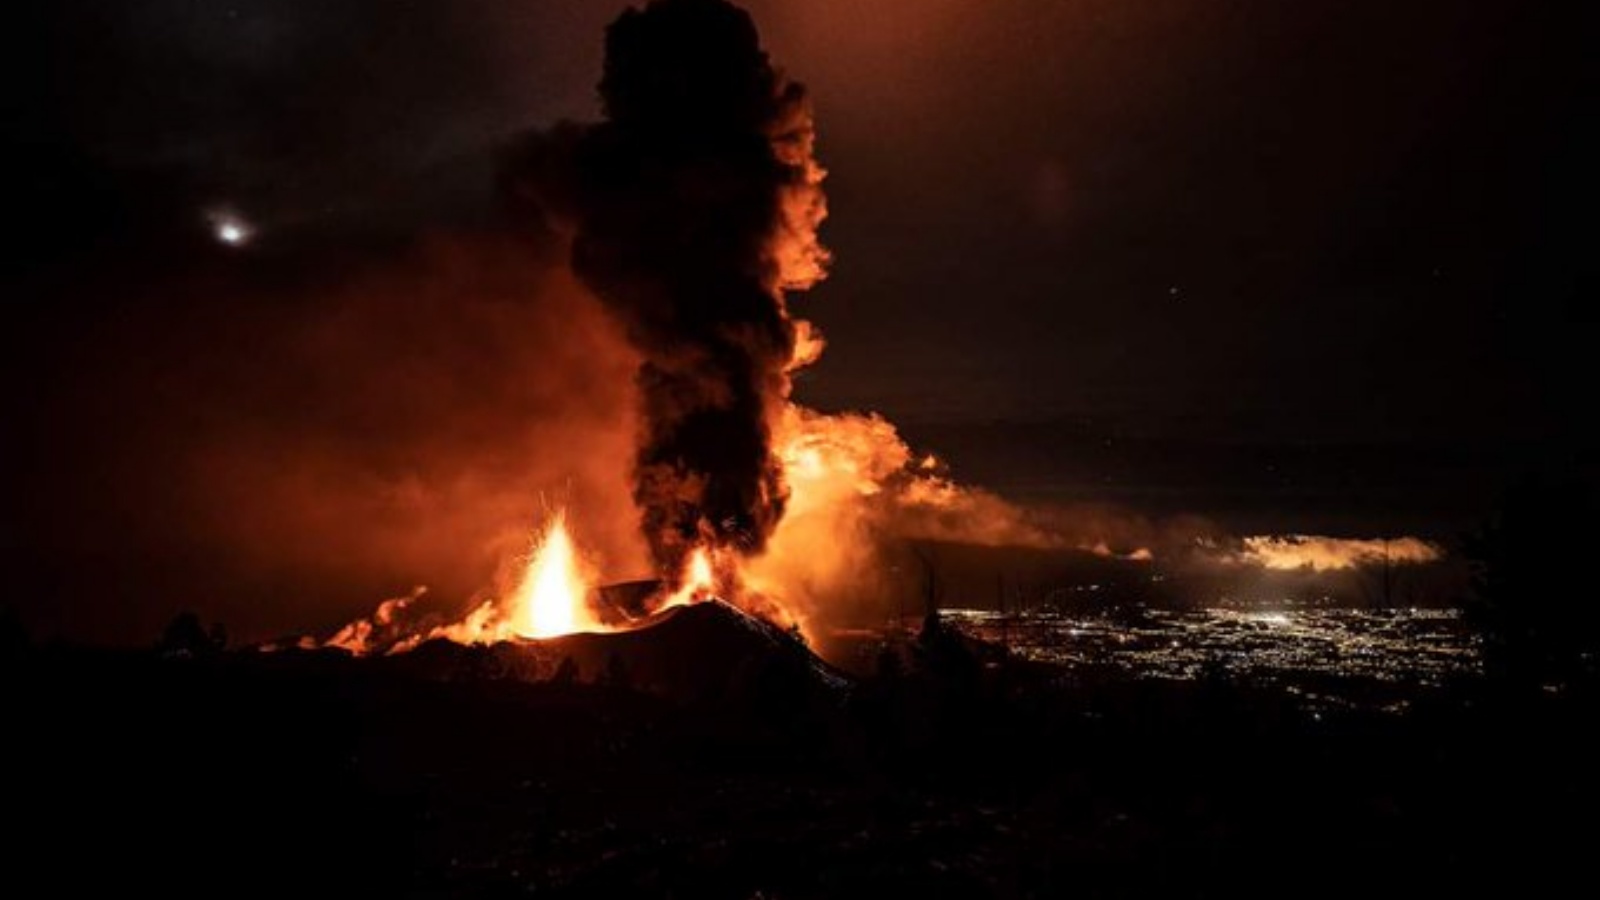 بركان كومبر فيجا في لا بالما اندلع لأول مرة في 19 أيلول/سبتمبر وتسبب في أضرار منذ ذلك الحين. ( MashupFM في تويتر)